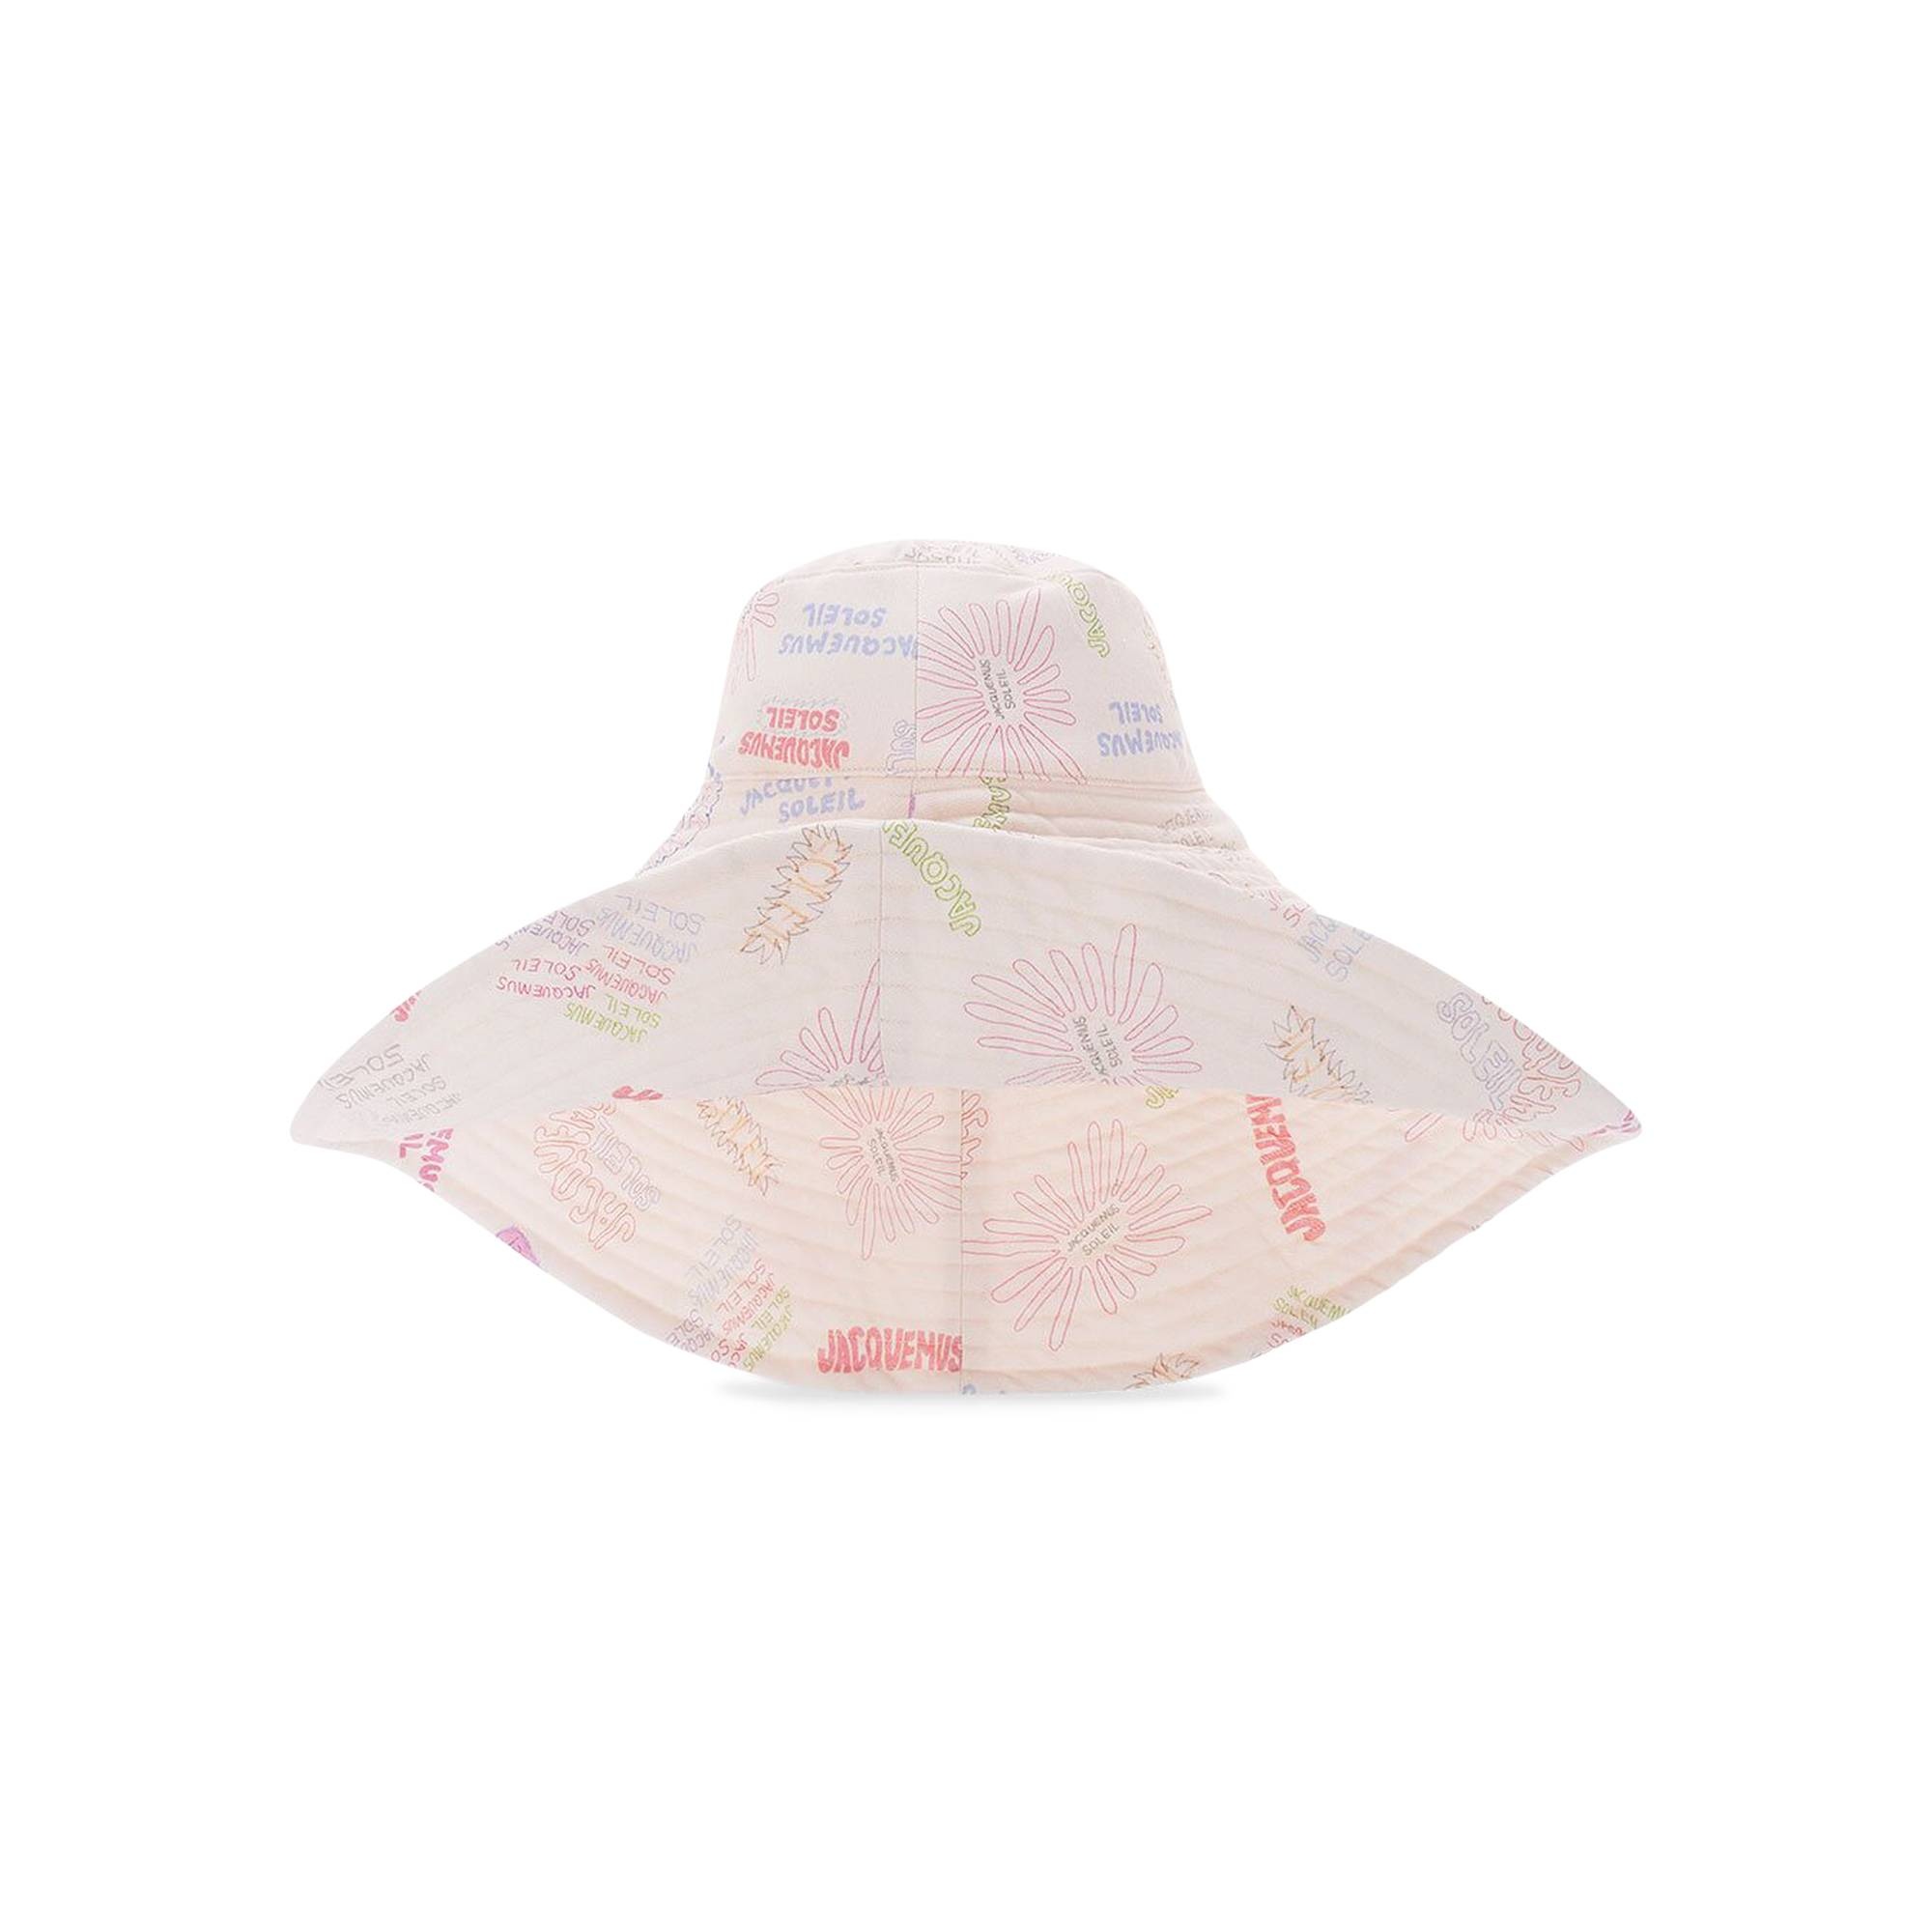 Le Chapeau Lagrima floral cotton sun hat in multicoloured - Jacquemus